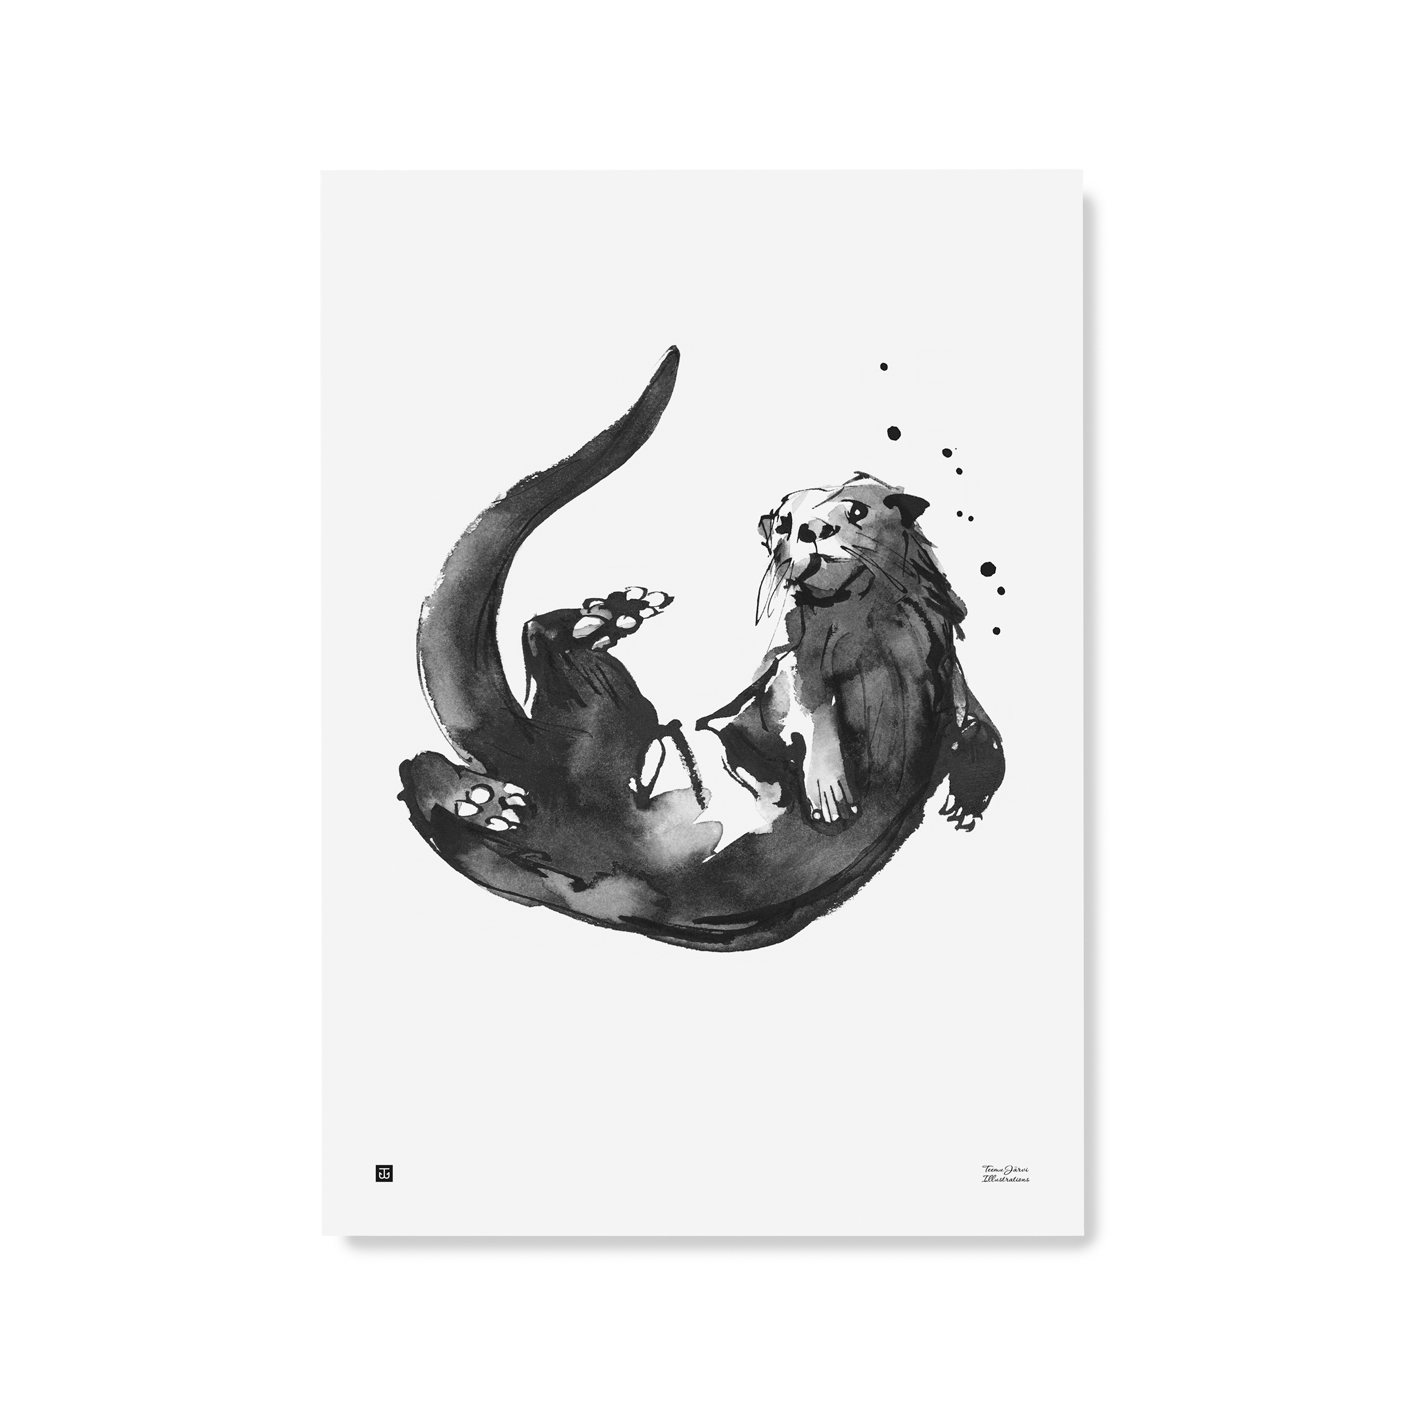 Otter poster